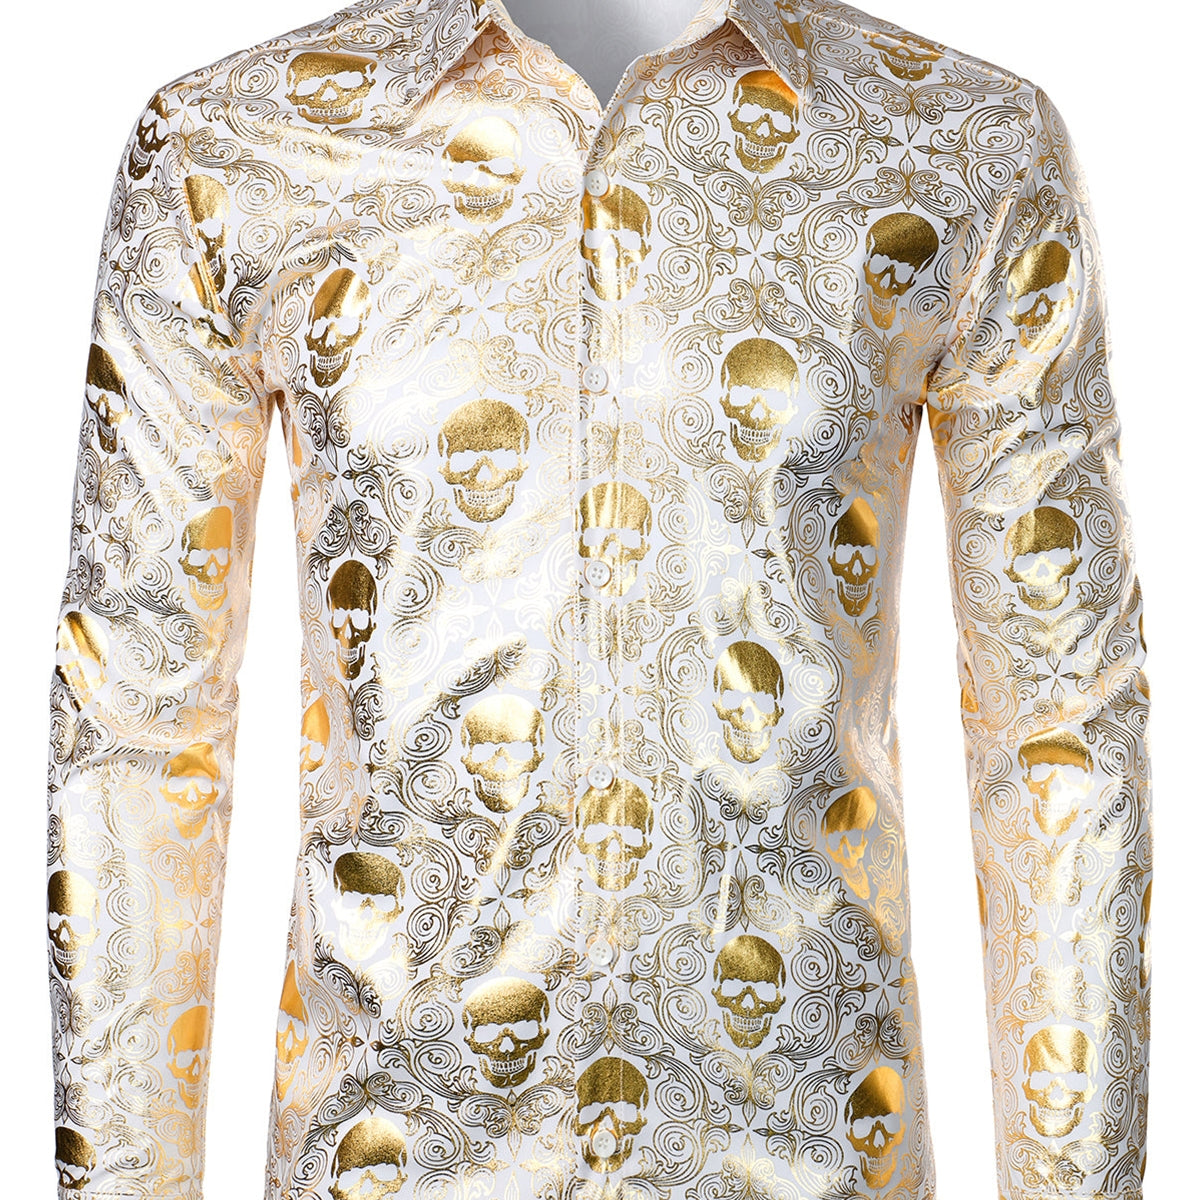 Men's Luxury Skull Design Paisley Shirt